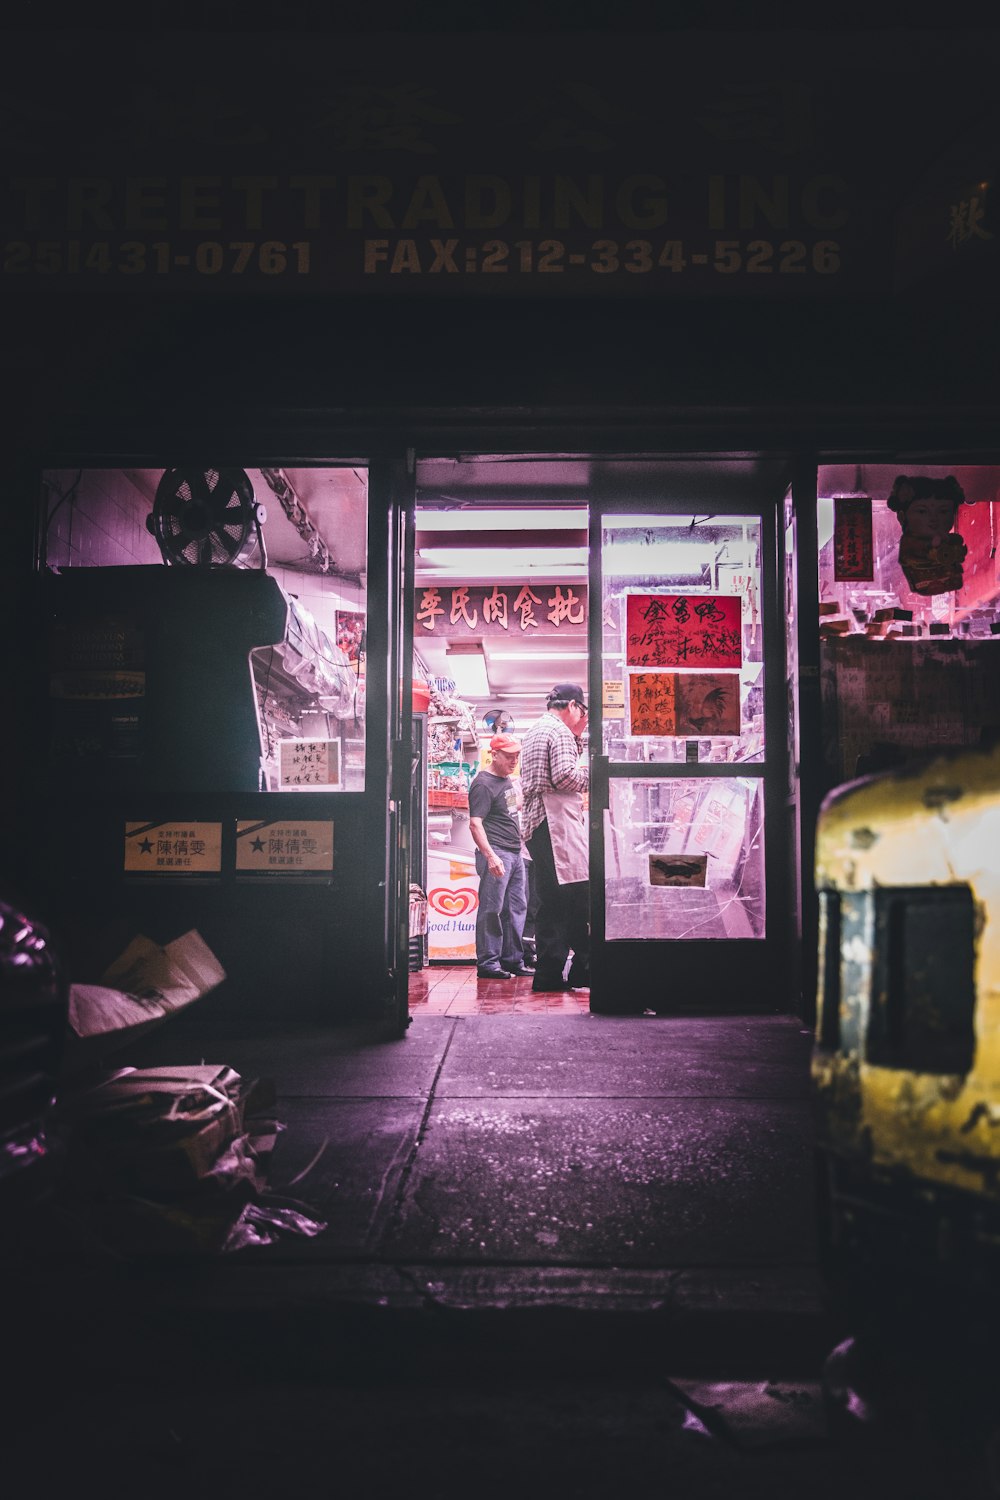 dois homens em pé dentro da loja durante a noite